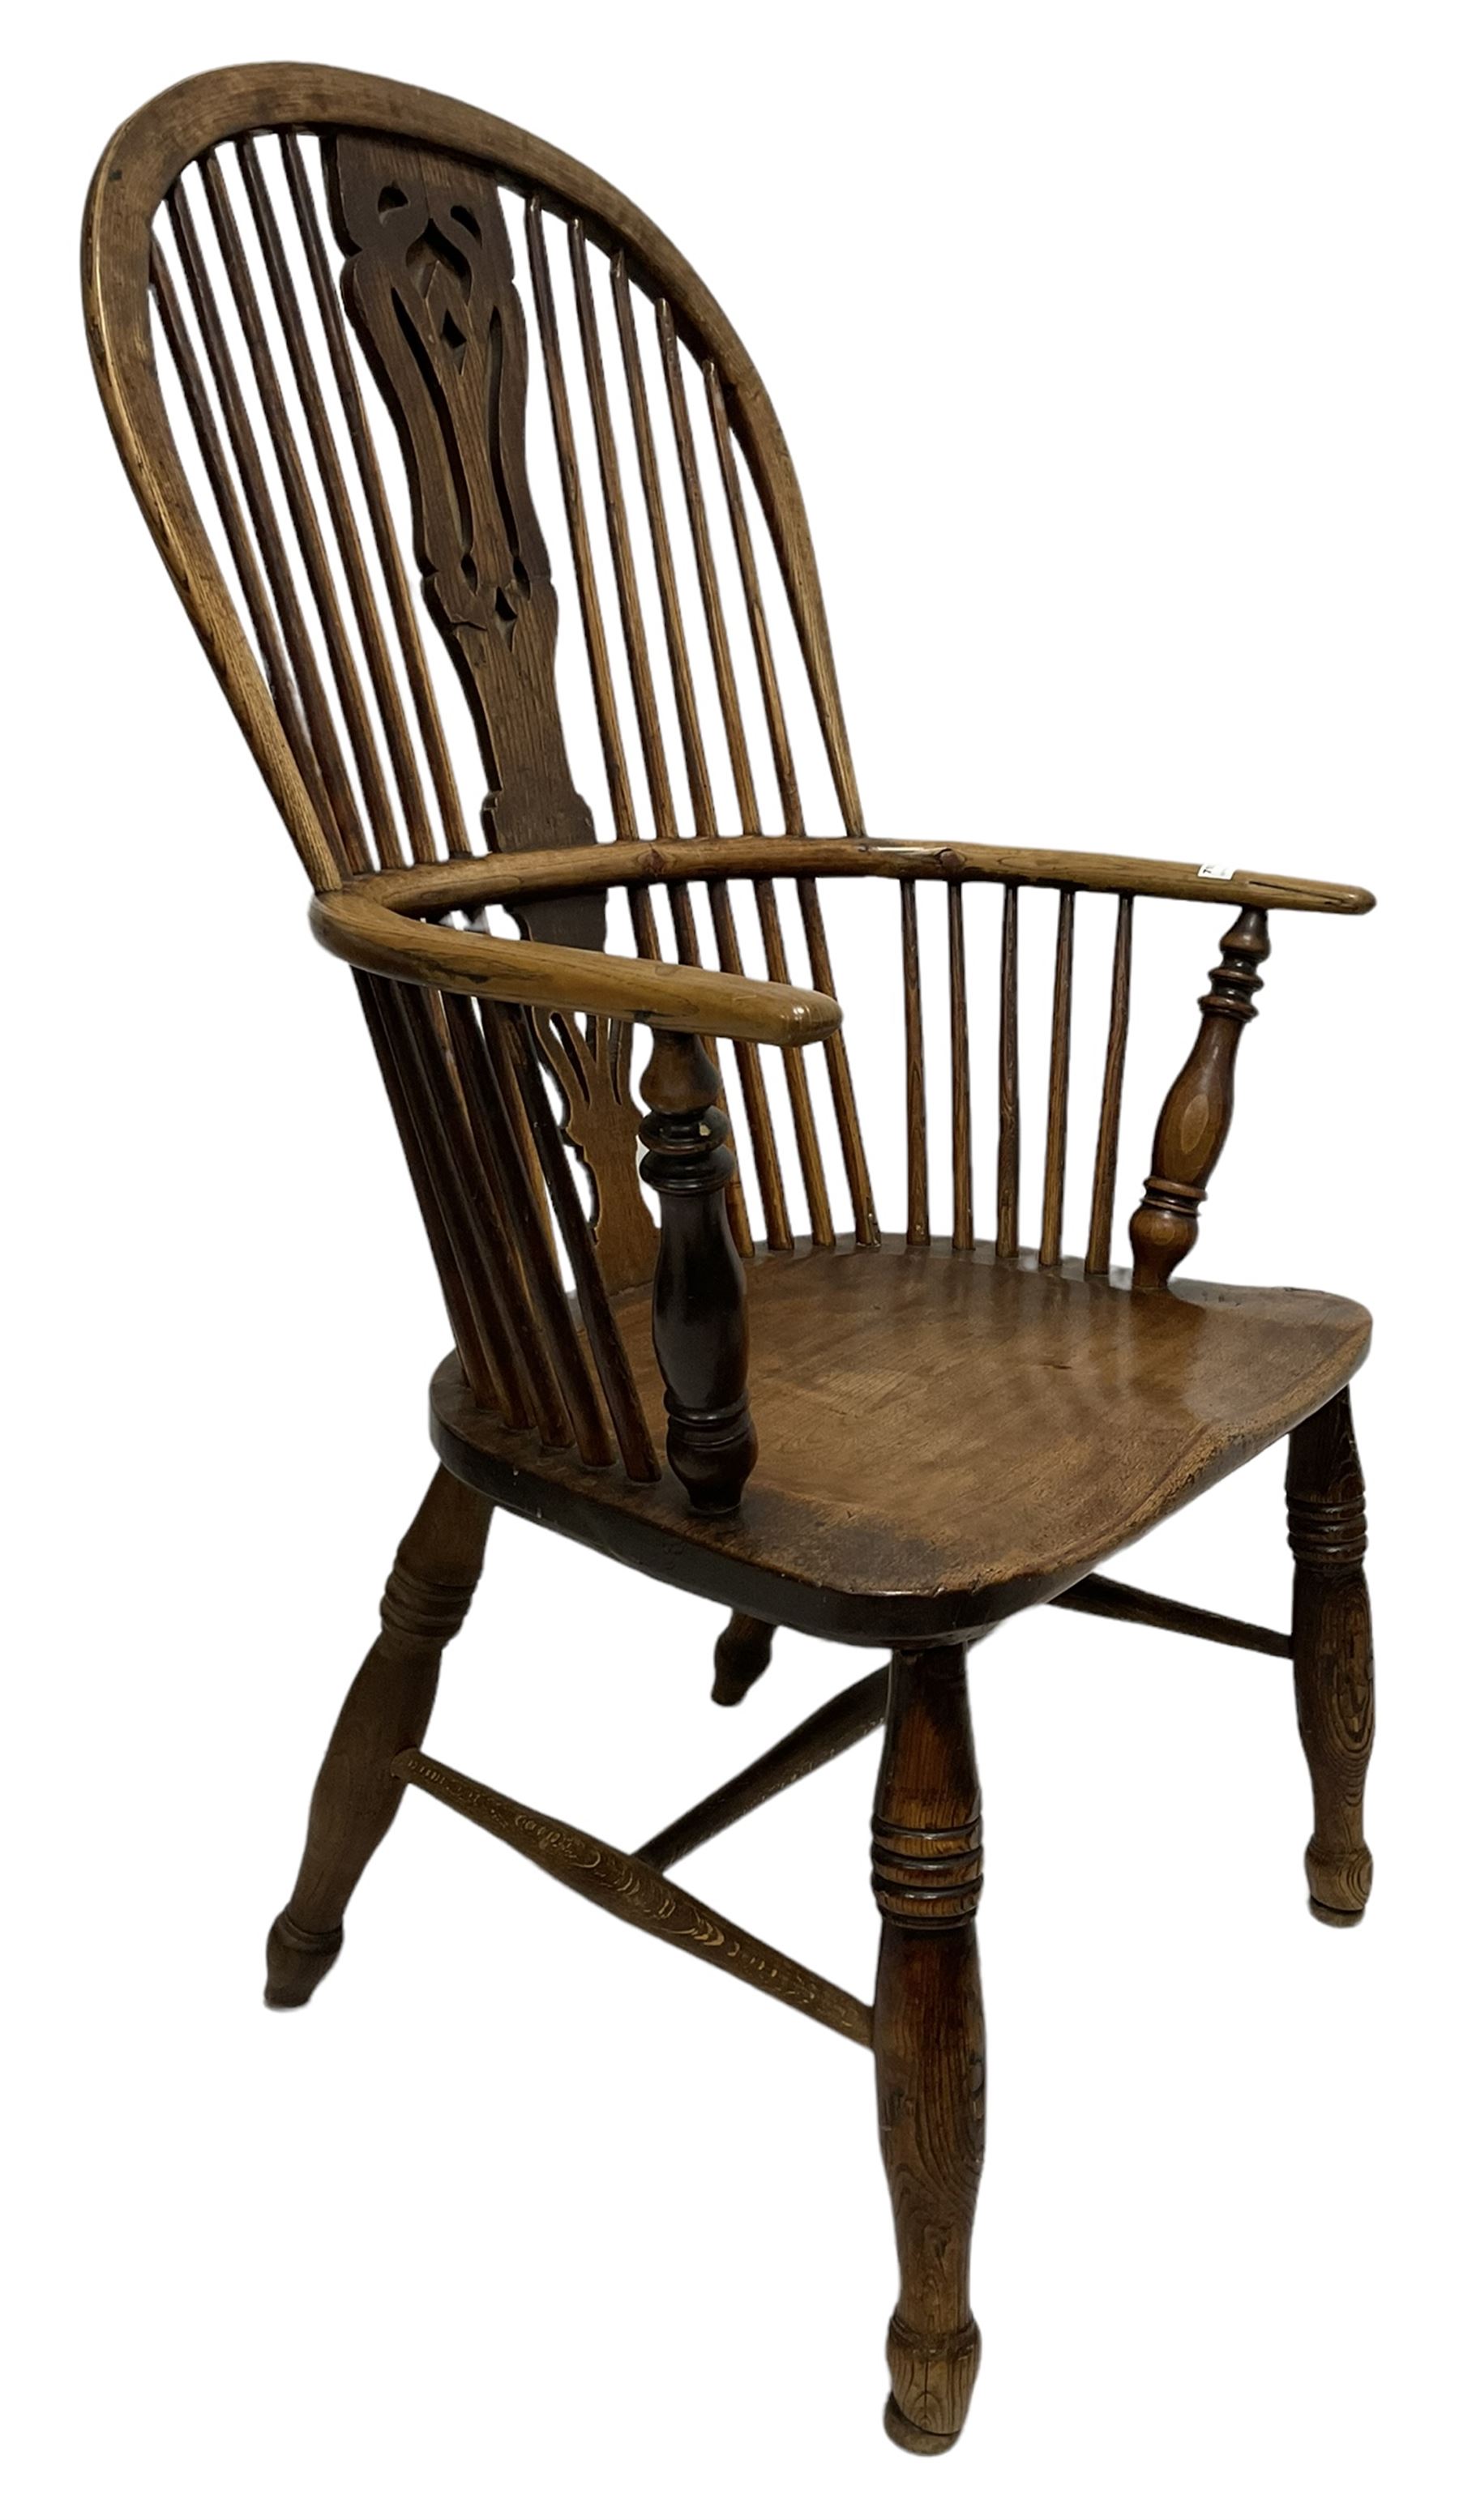 Early 19th century Windsor armchair